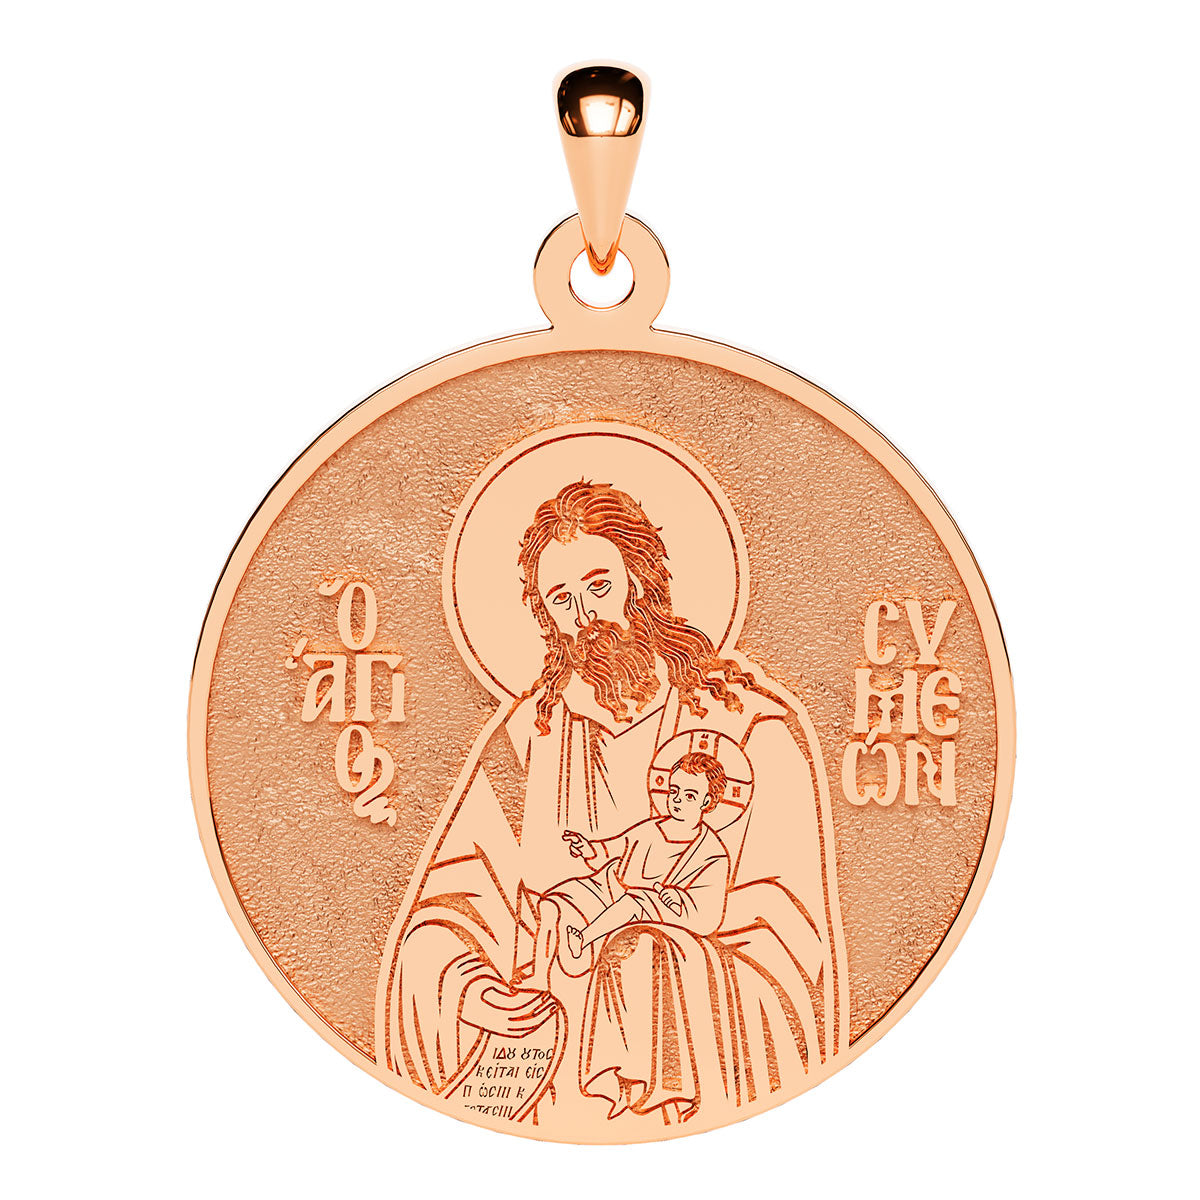 Saint Simeon (Symeon) the Prophet Greek Orthodox Icon Round Medal